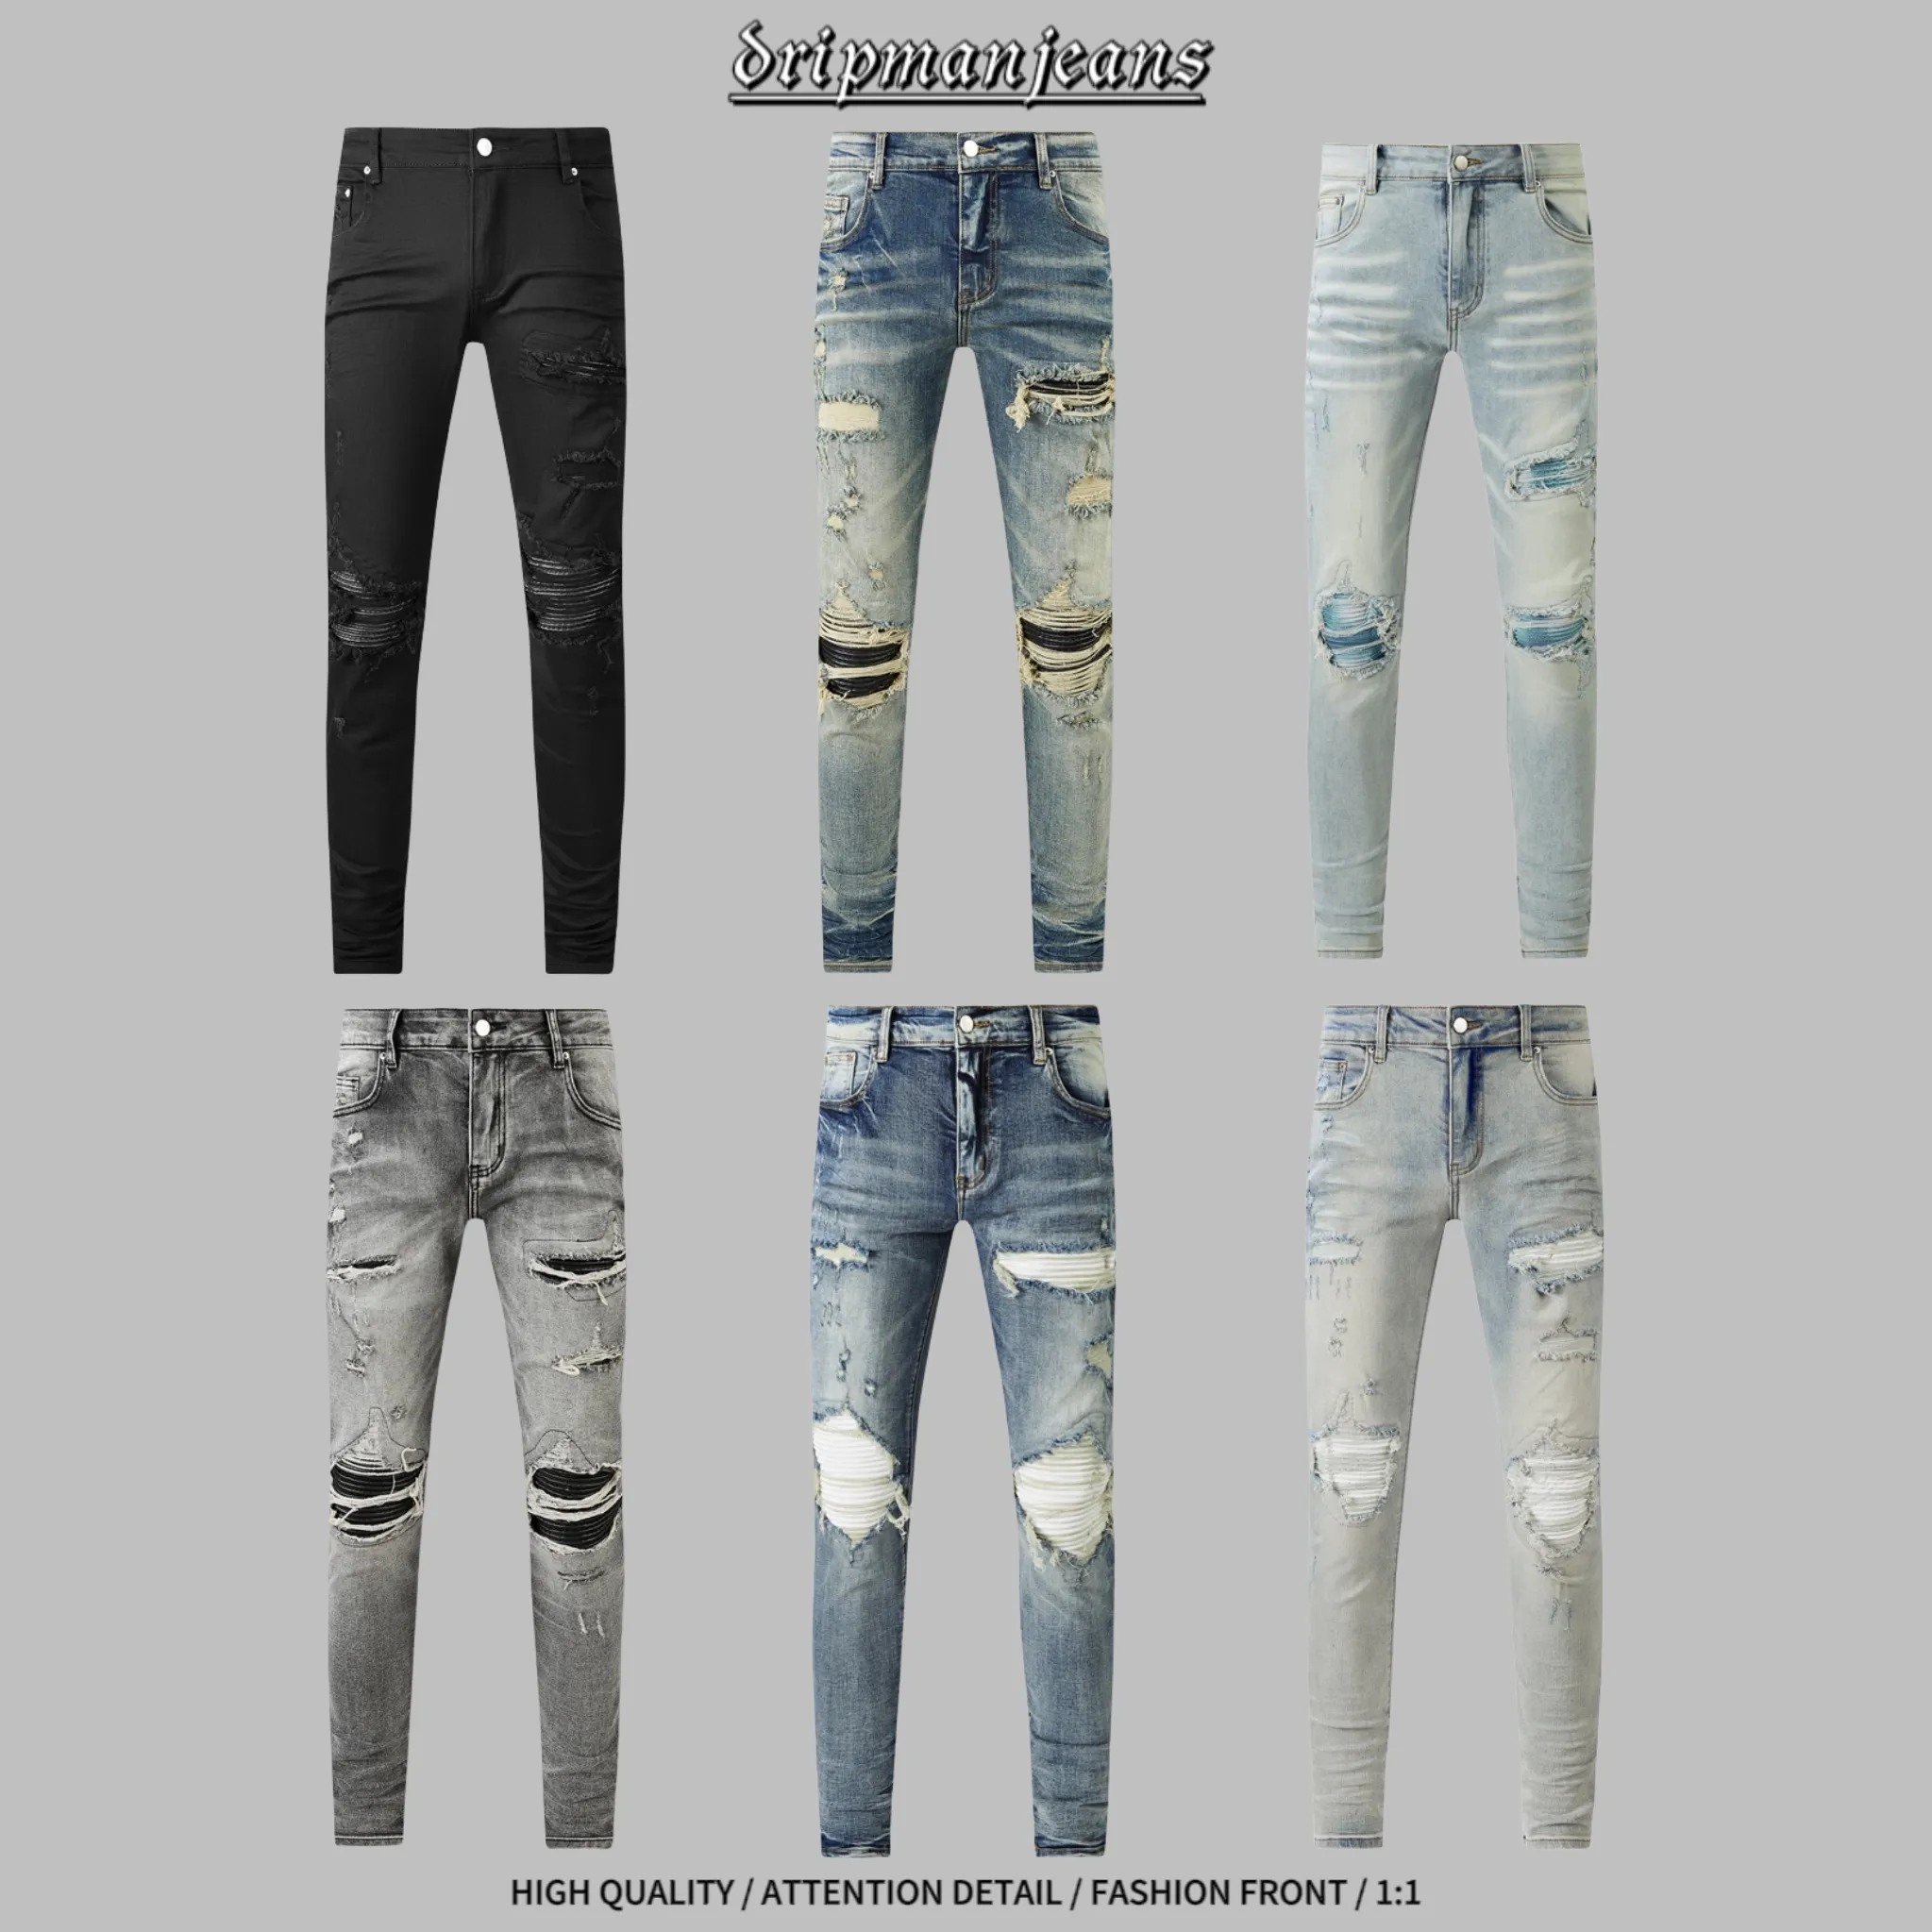 Am Jeans Designer Jeans Usadrip Jeans Jeans pour hommes Slim Jeans de haute qualité jeans Hiphop Jeans Skinny Jeans Pantal